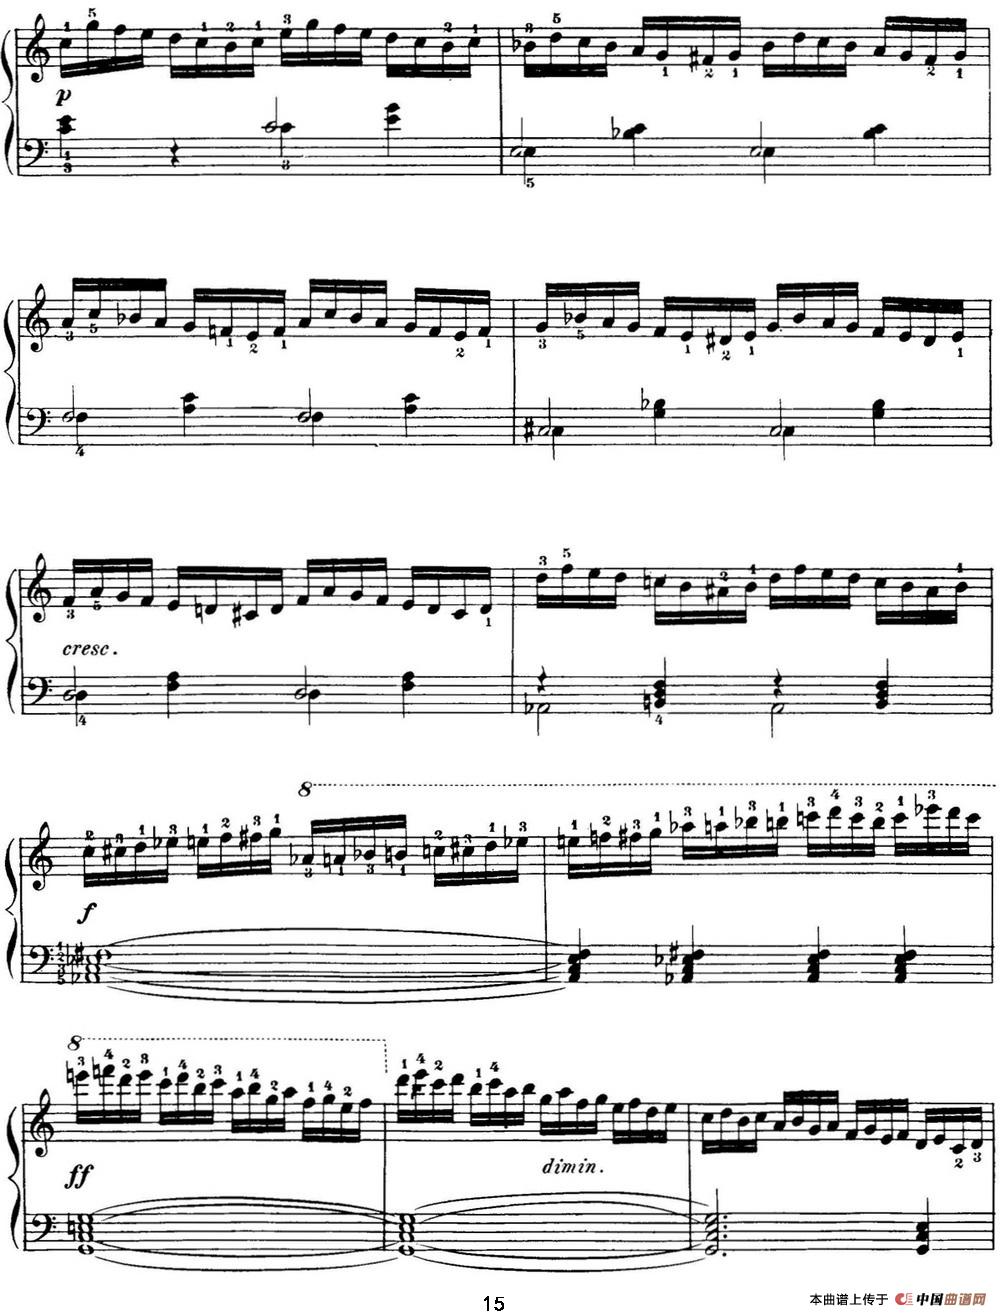 40首车尔尼Op.299钢琴快速练习曲（NO.8）(1)_C299_页面_015.jpg